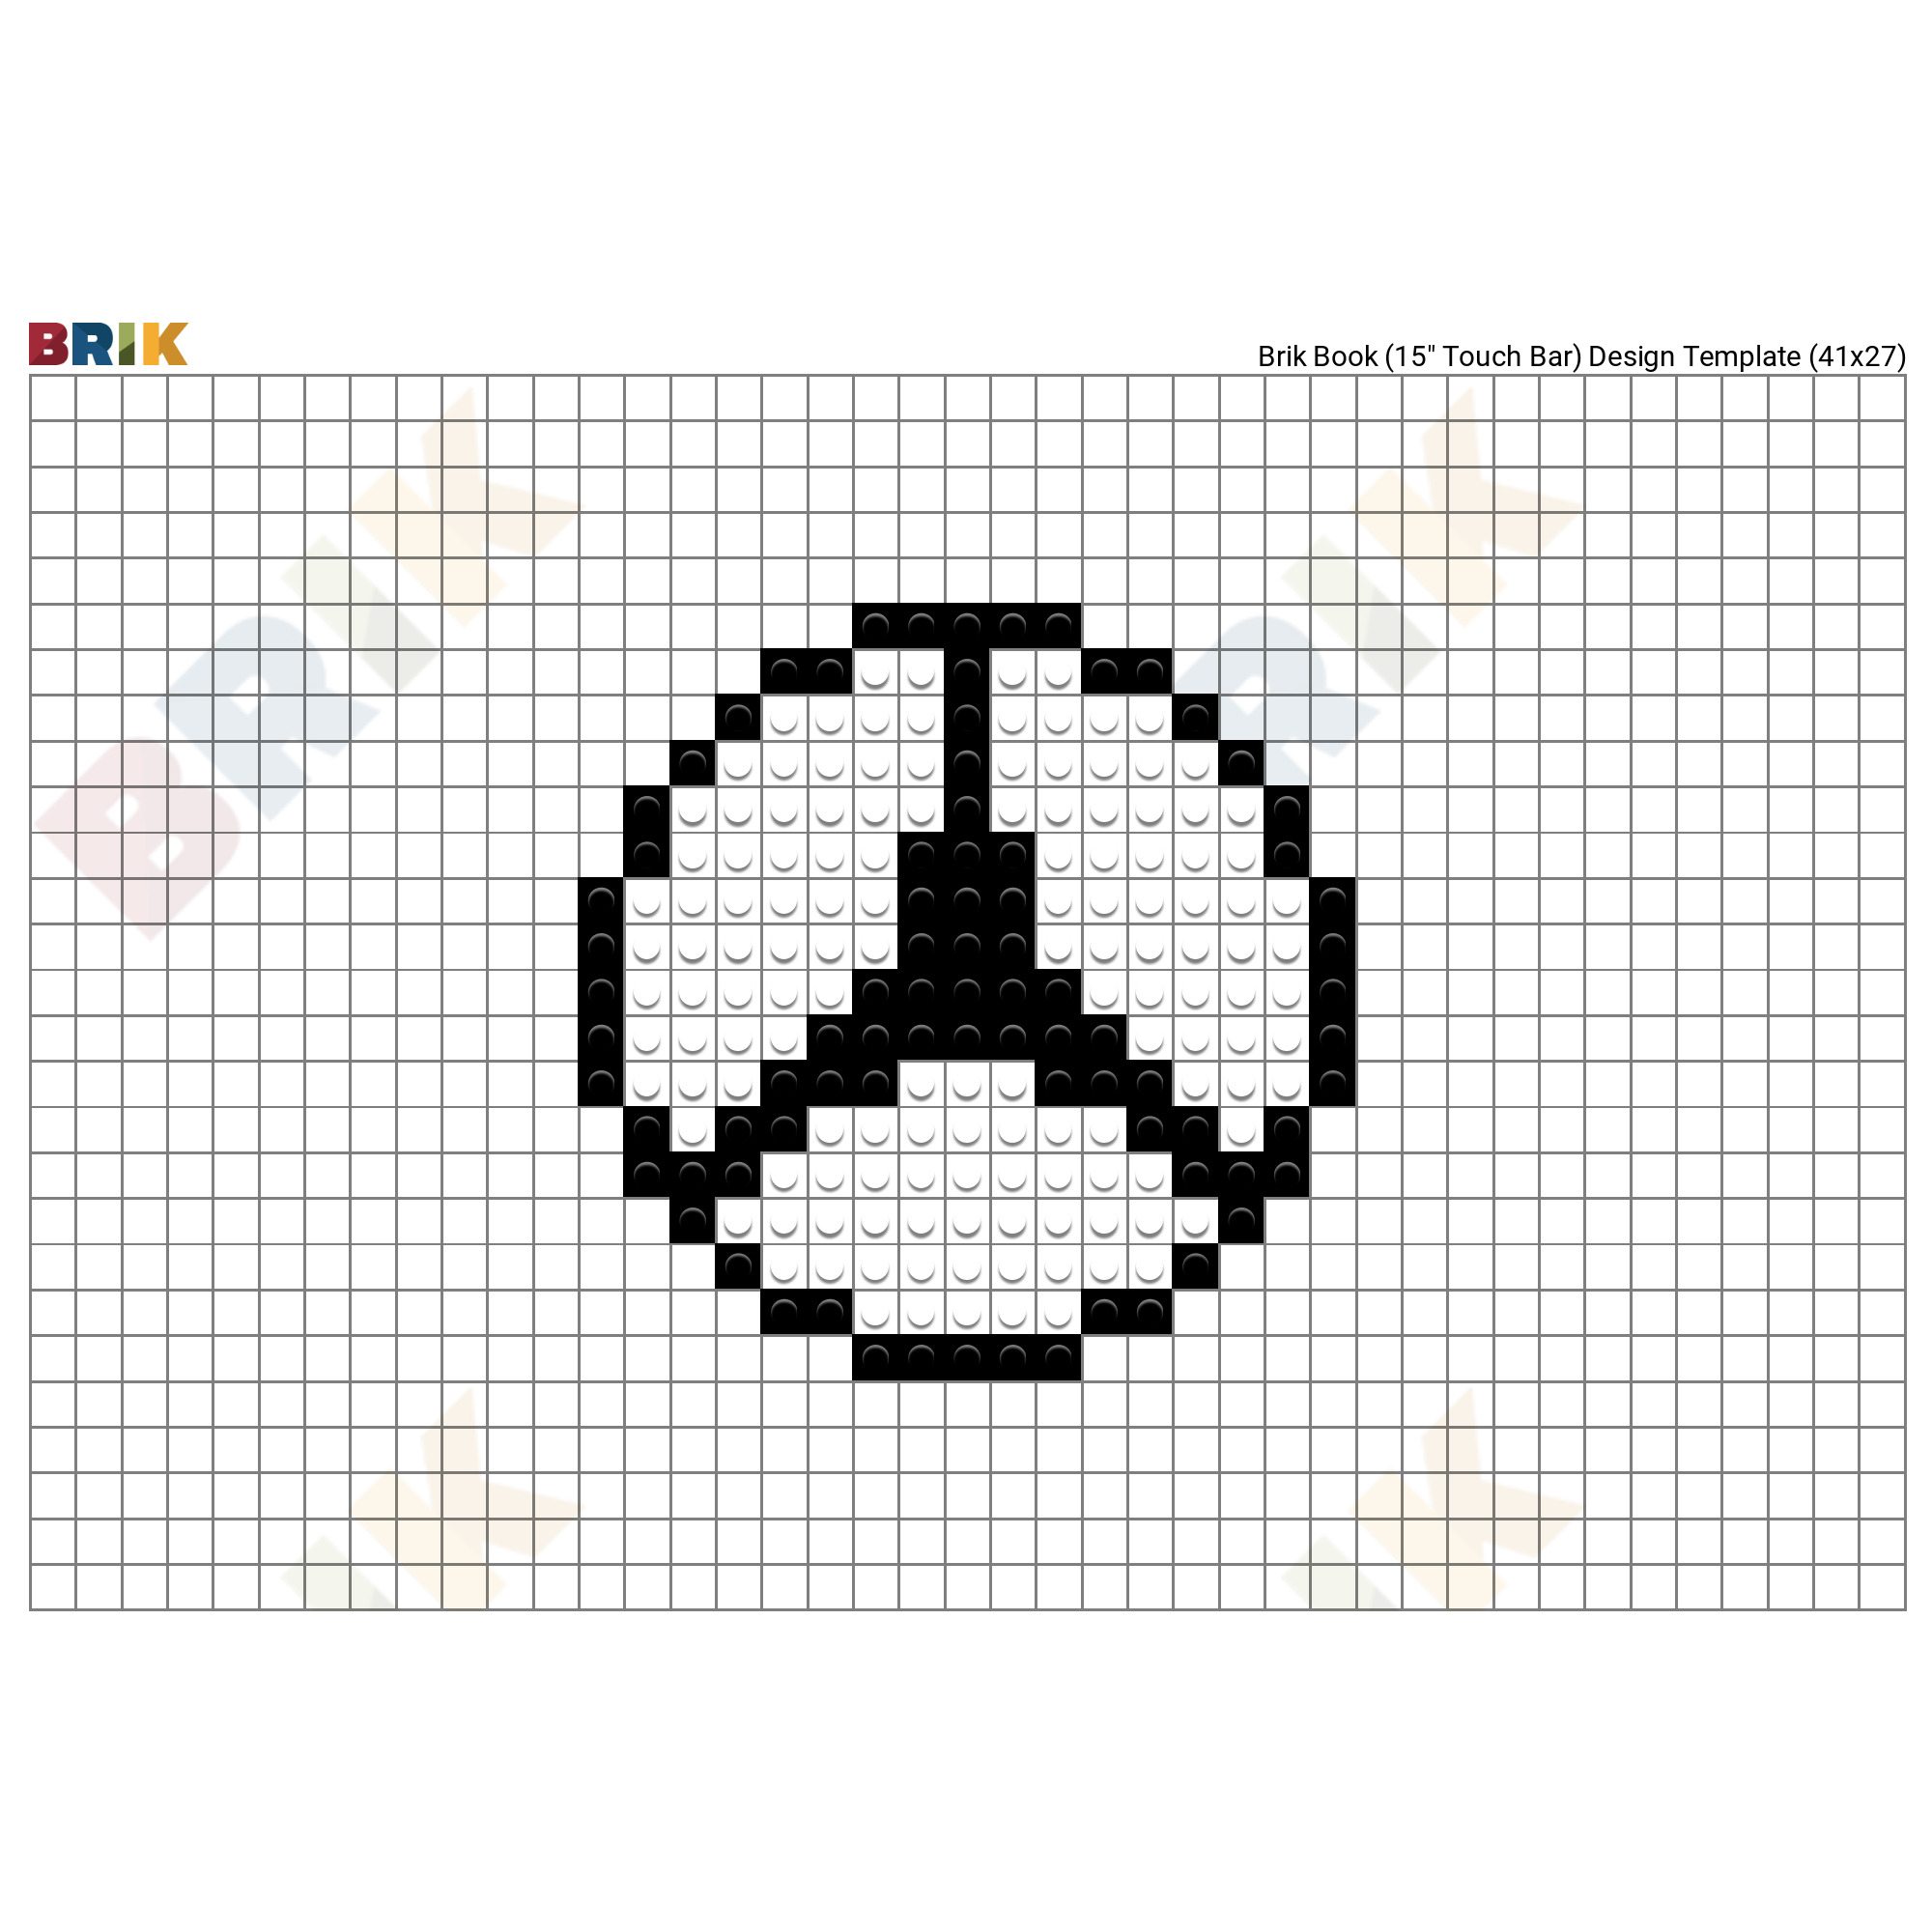 minecraft logo pixel art template